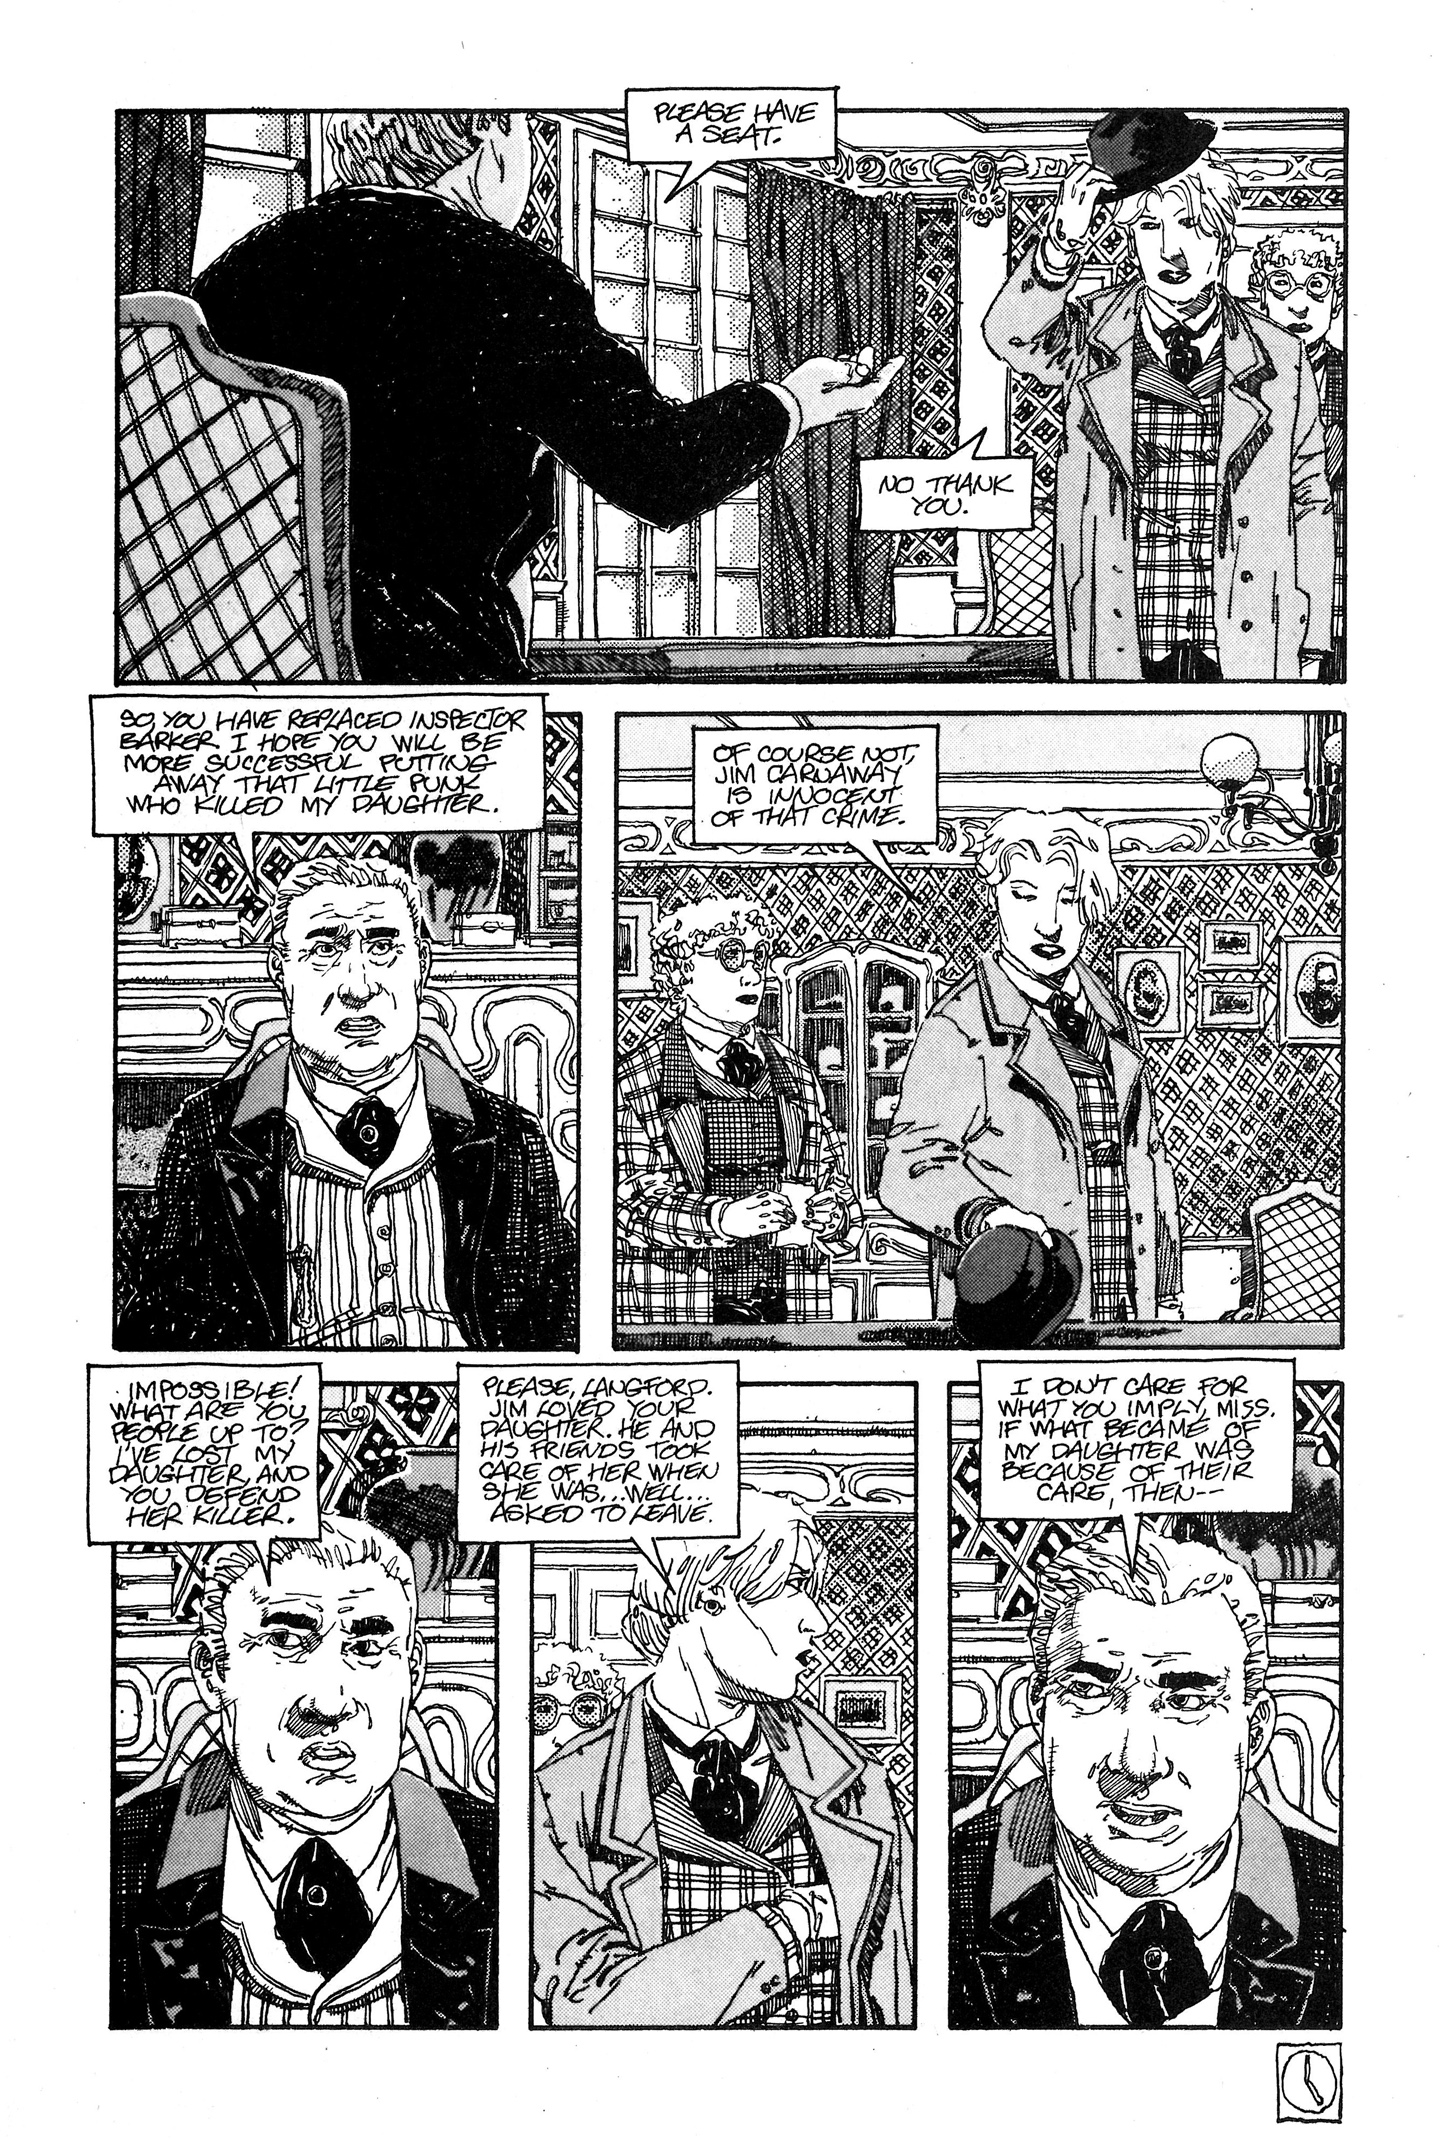 Read online Baker Street comic -  Issue #10 - 18